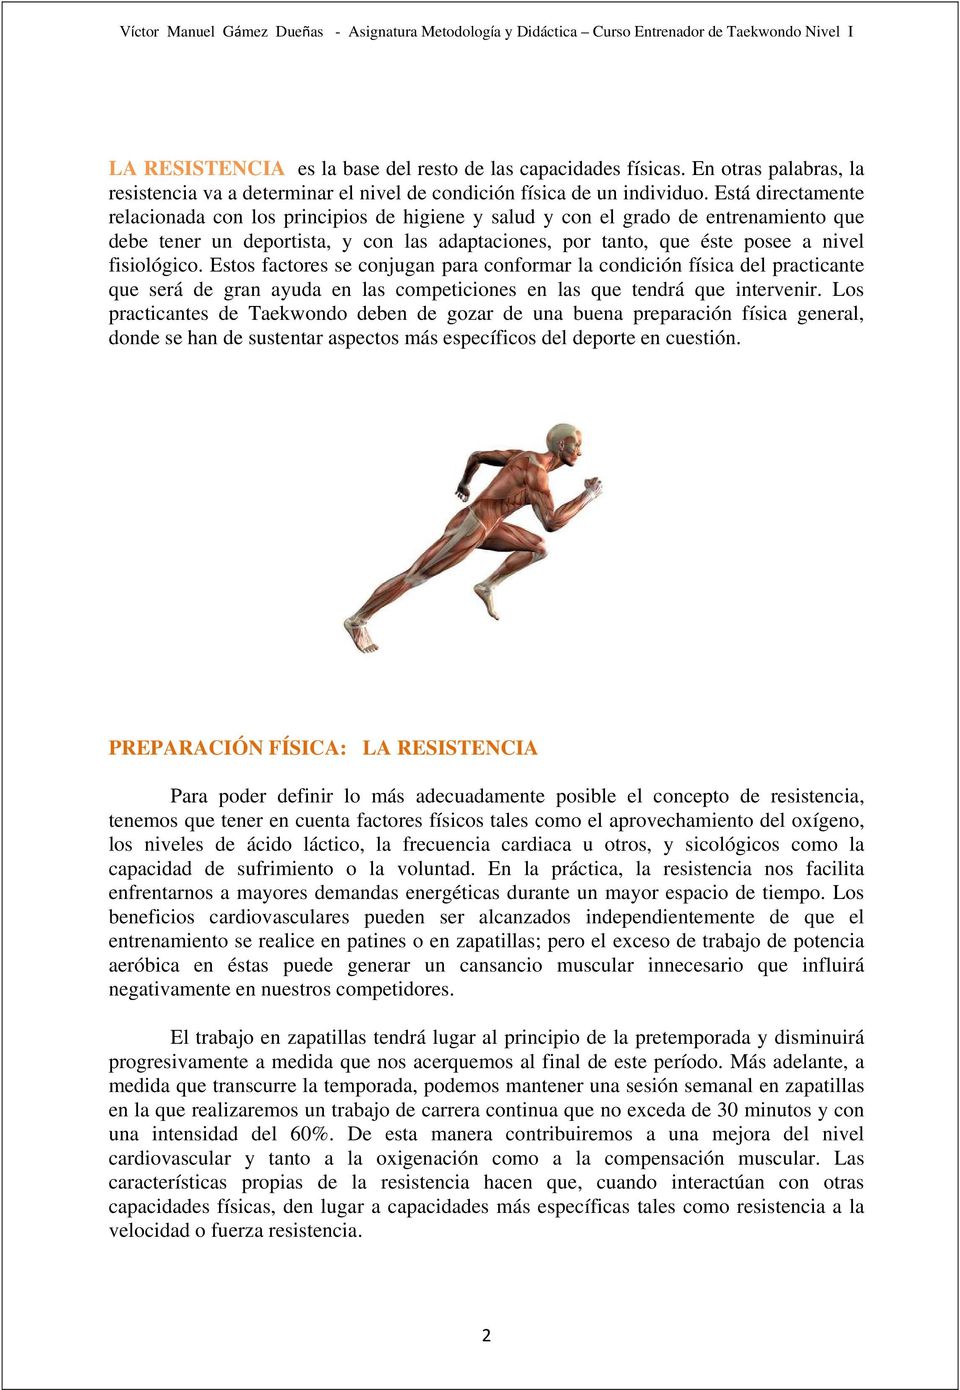 Estos factores se conjugan para conformar la condición física del practicante que será de gran ayuda en las competiciones en las que tendrá que intervenir.